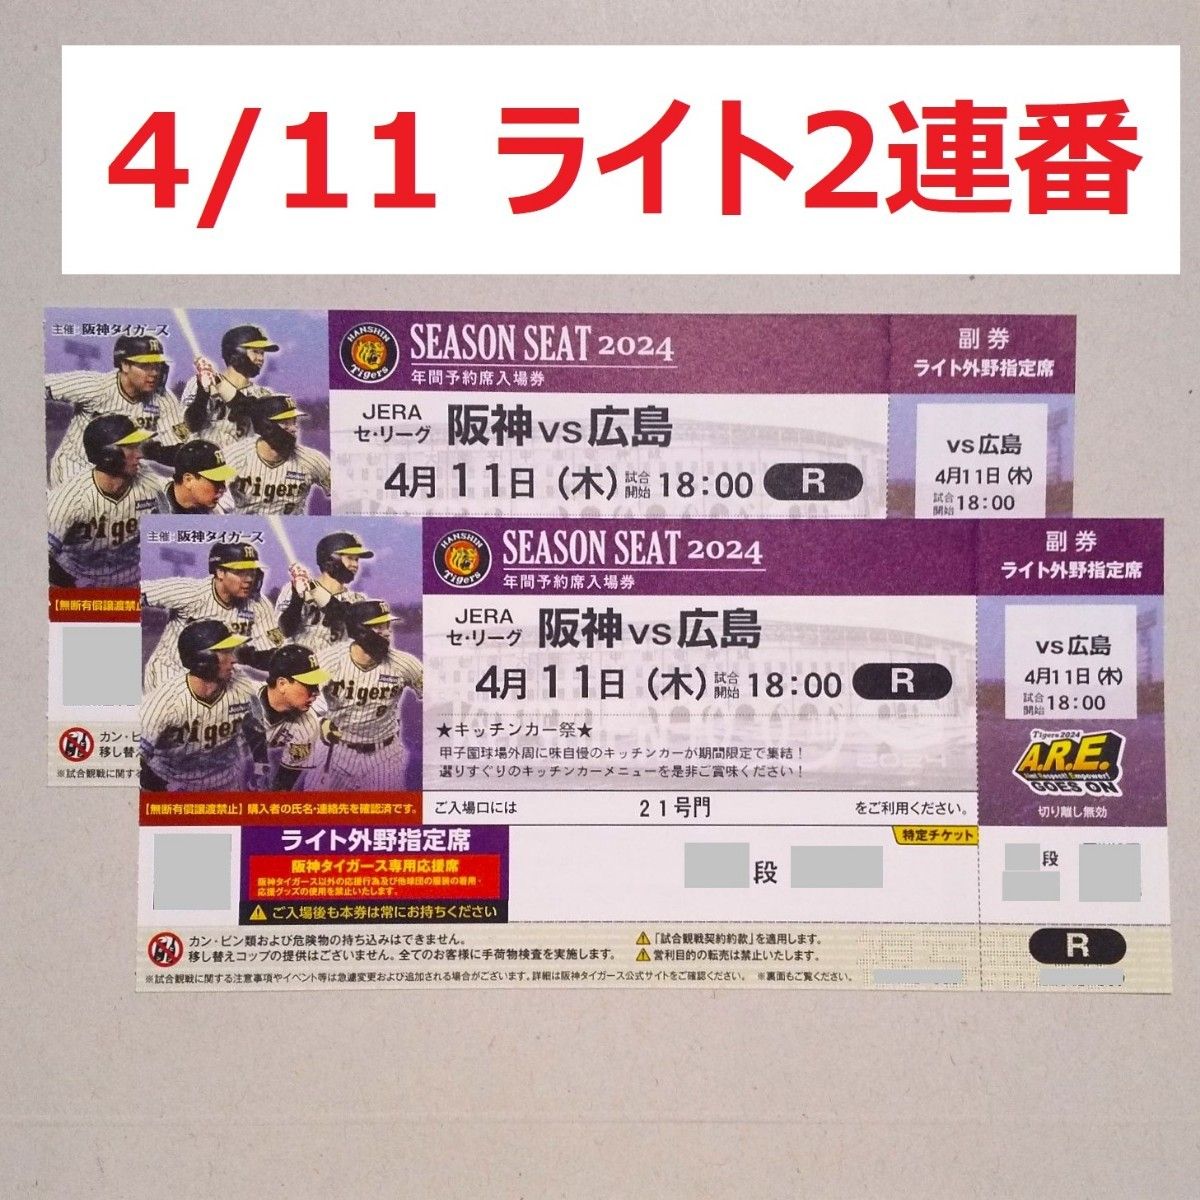 4月11日 甲子園 阪神タイガース ライト外野指定席 ペアチケット 4 11